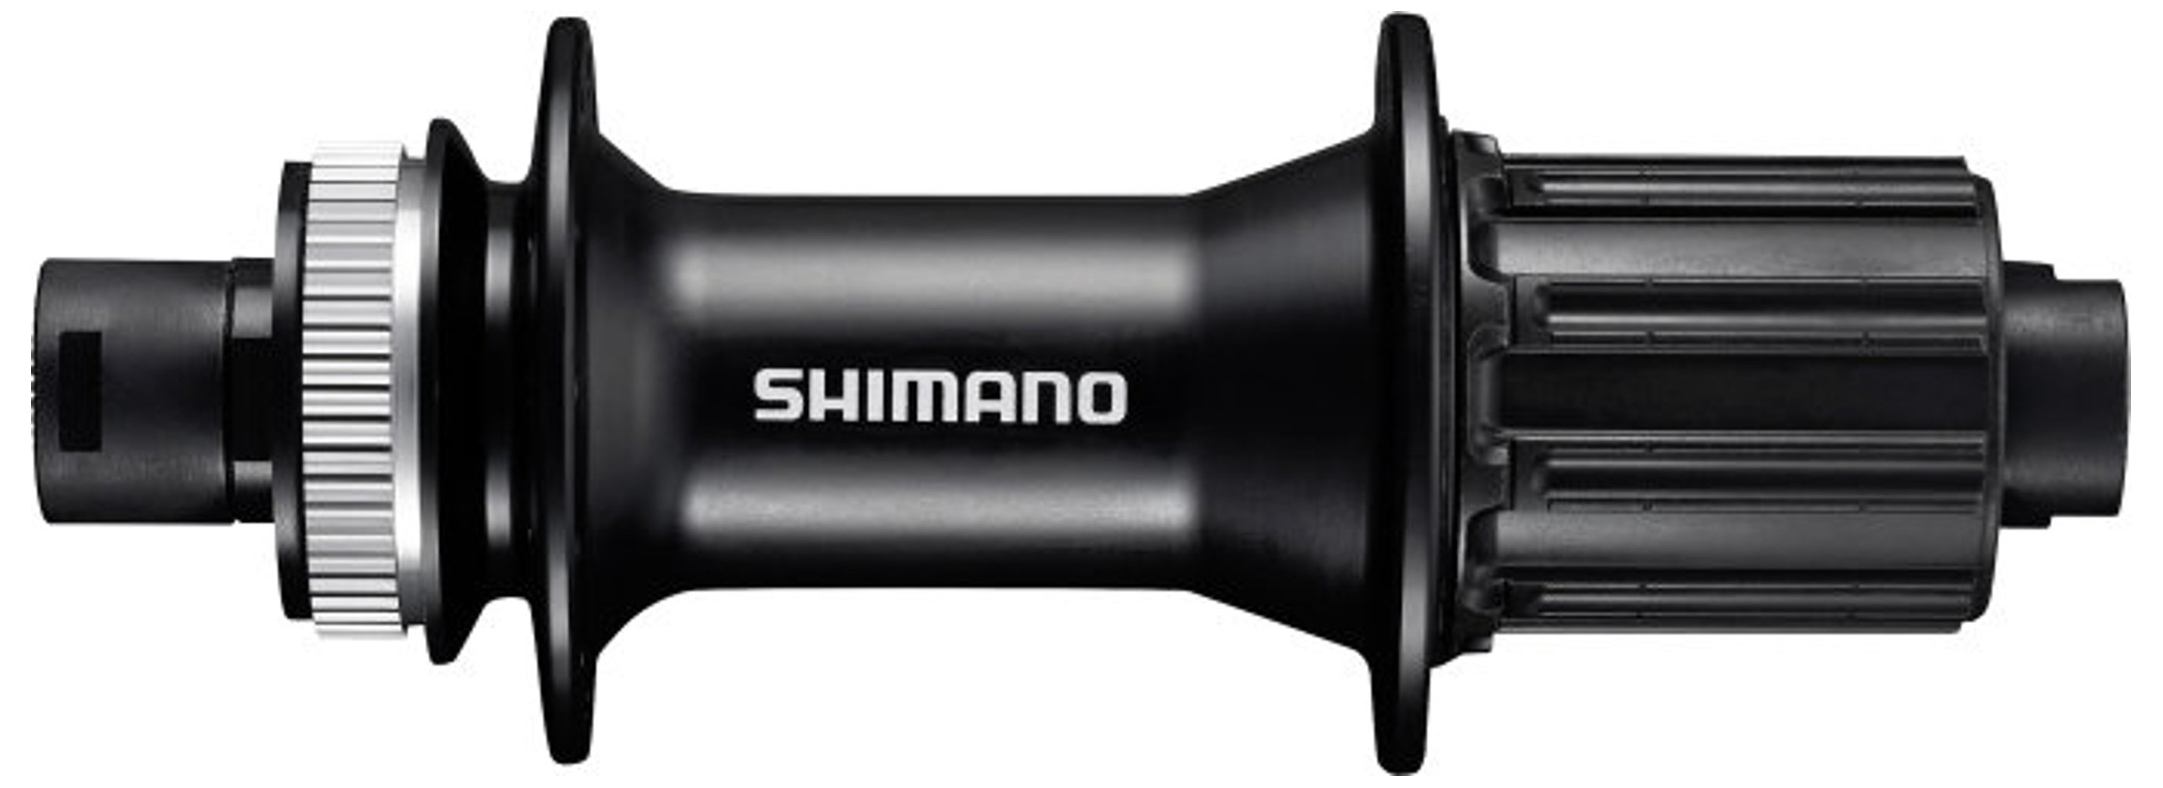  Втулка для велосипеда Shimano MT400-B 8-11ск., 32отв. (EFHMT400BB)